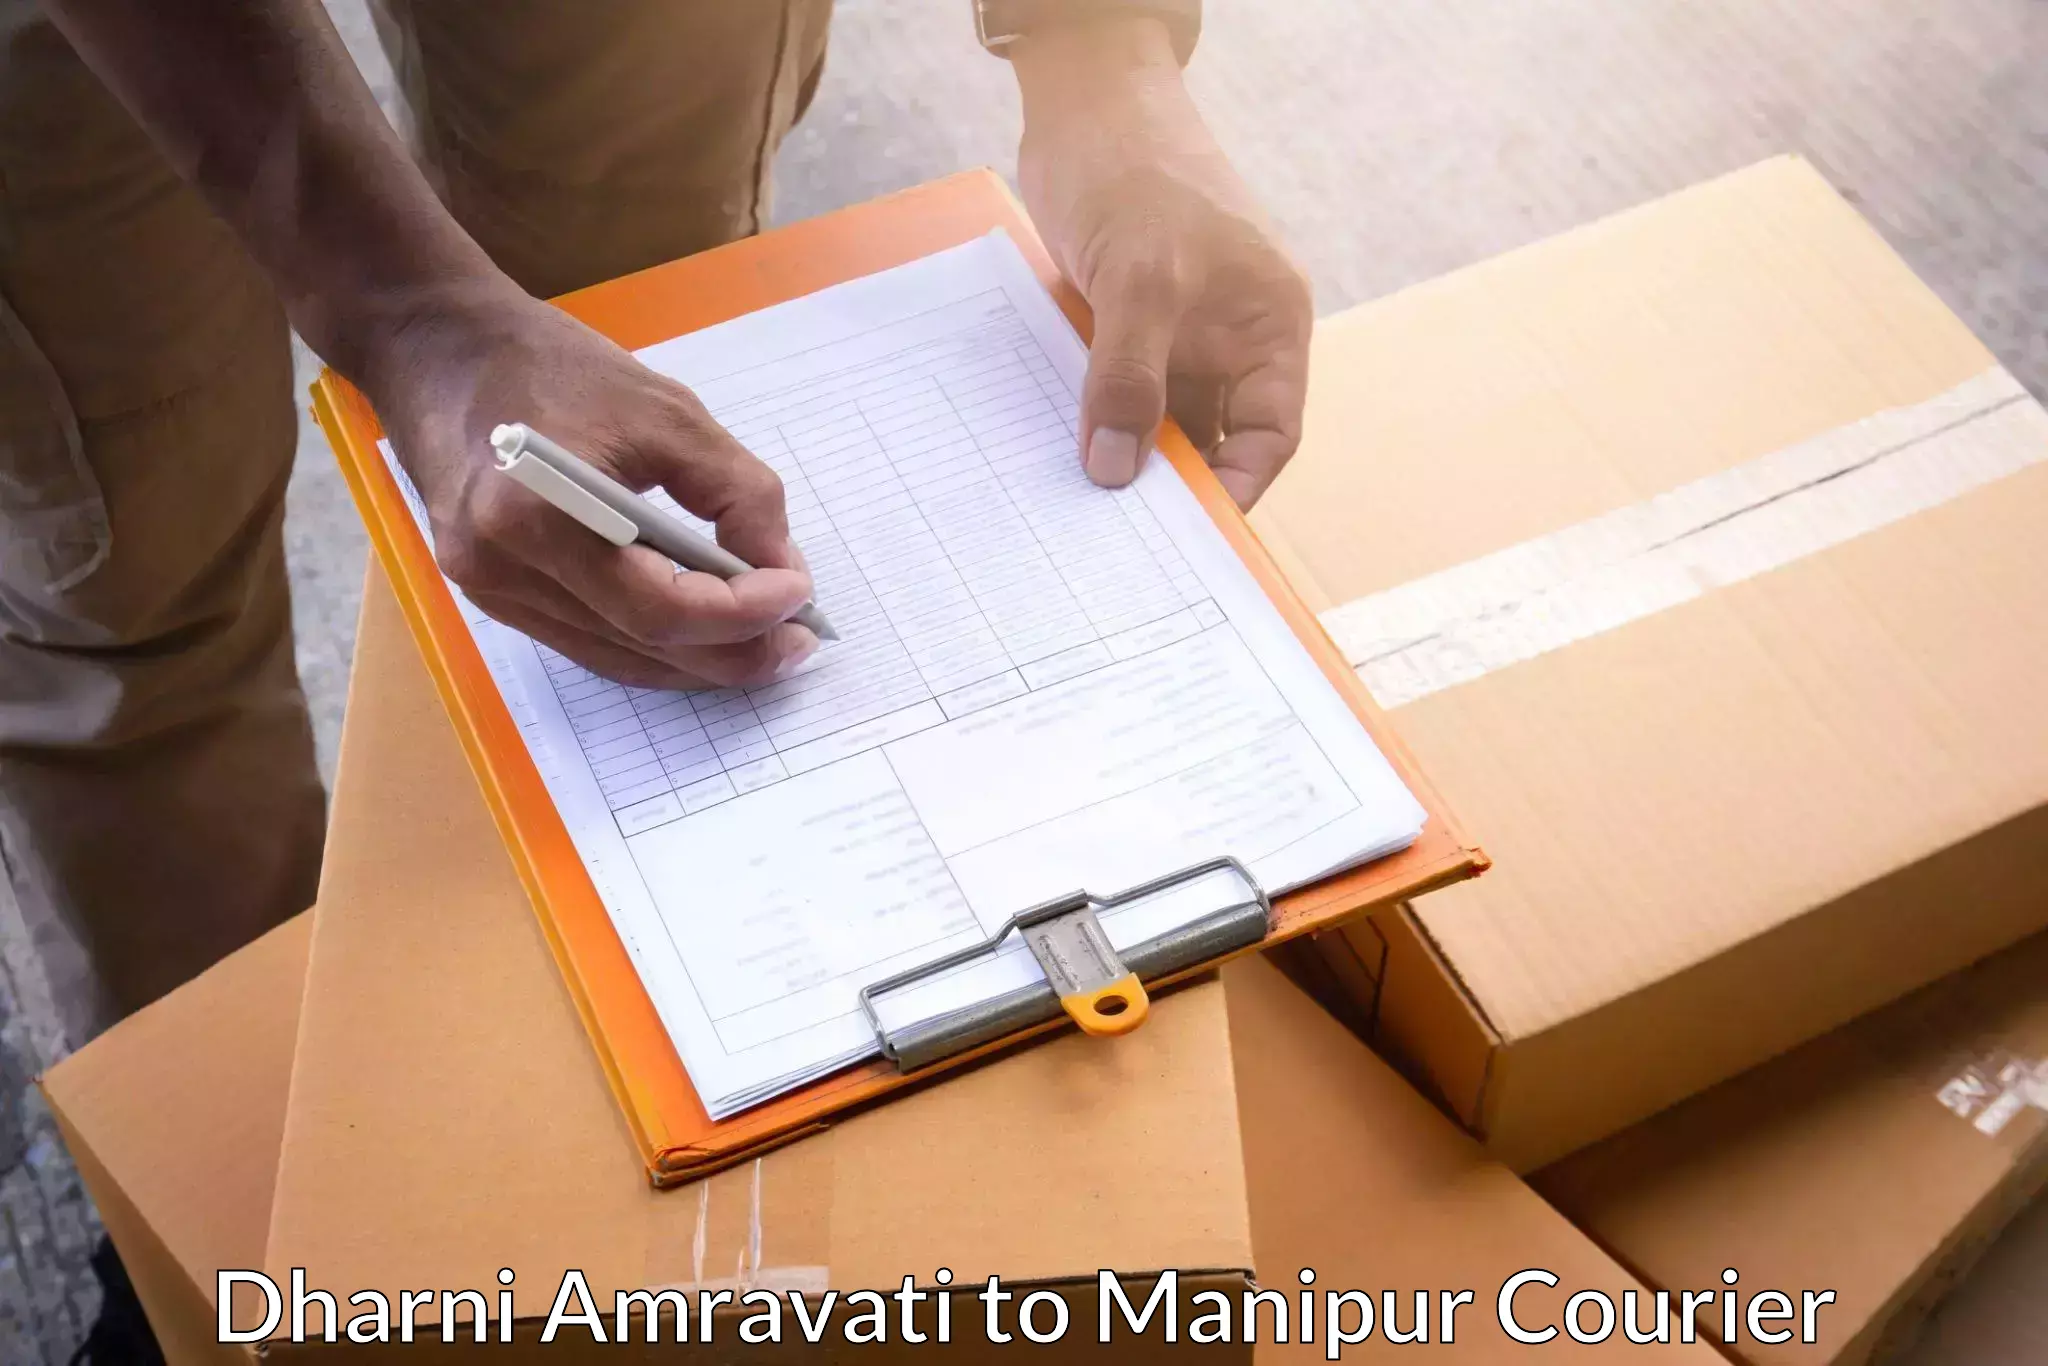 Parcel service for businesses Dharni Amravati to Senapati